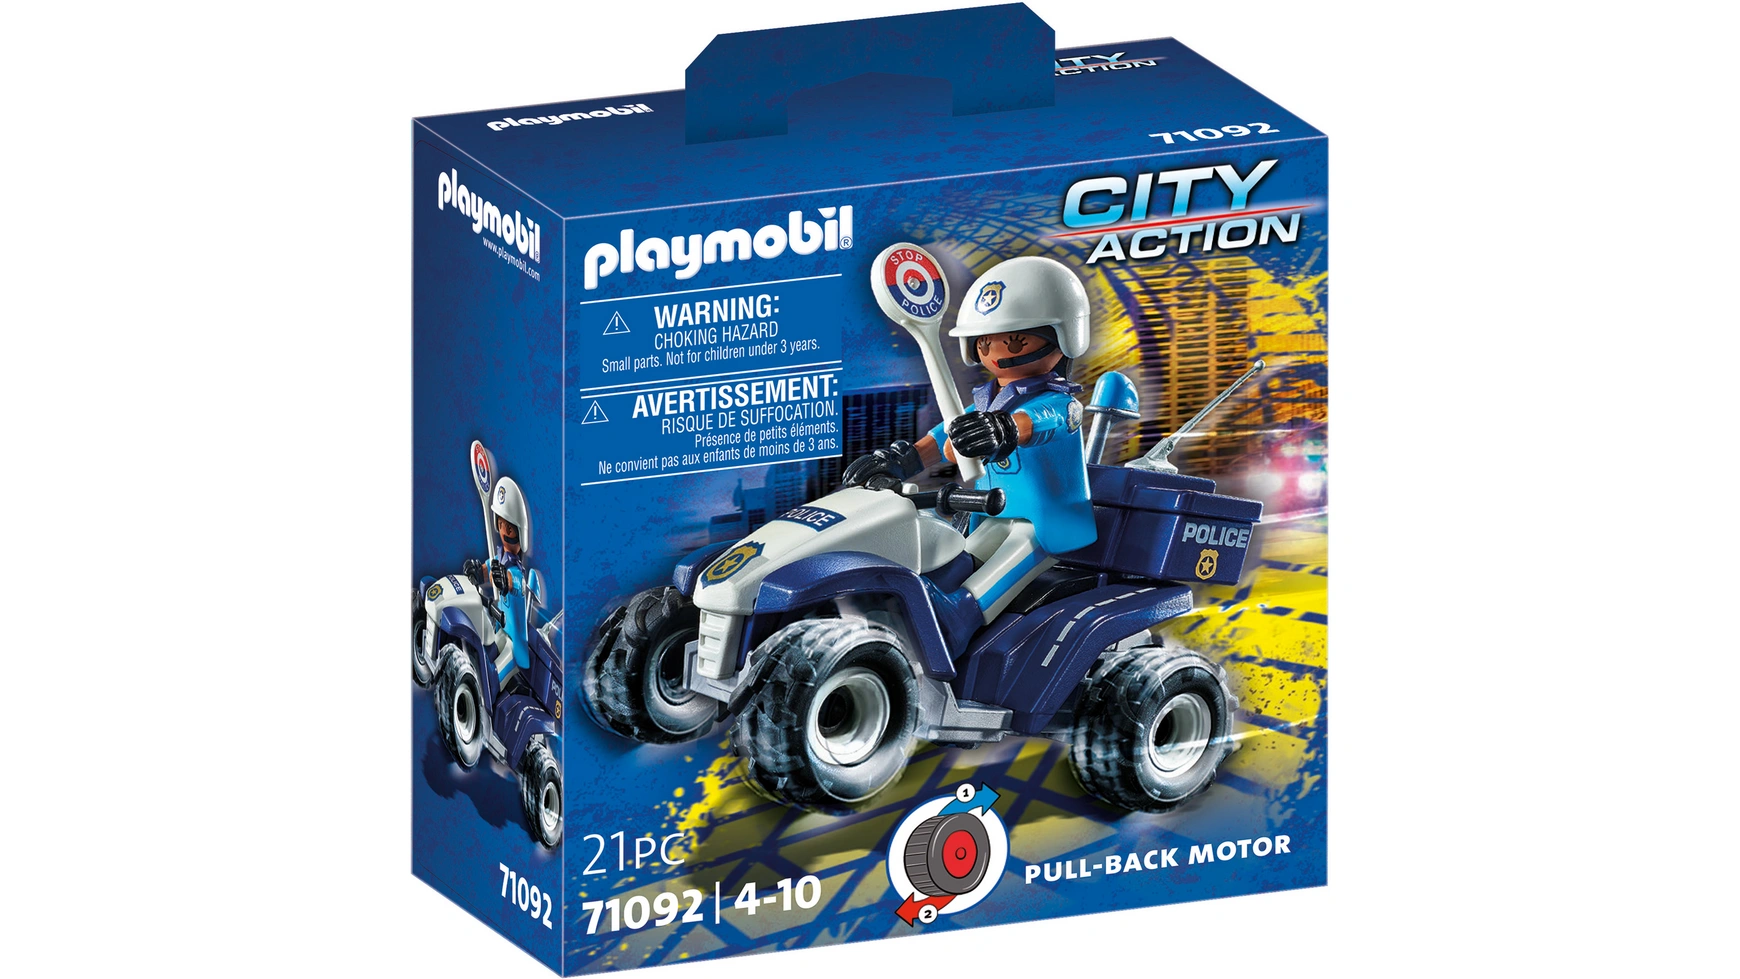 игрушки playmobil pm9470 убежище кристального алмаза City action полицейский скоростной квадроцикл Playmobil